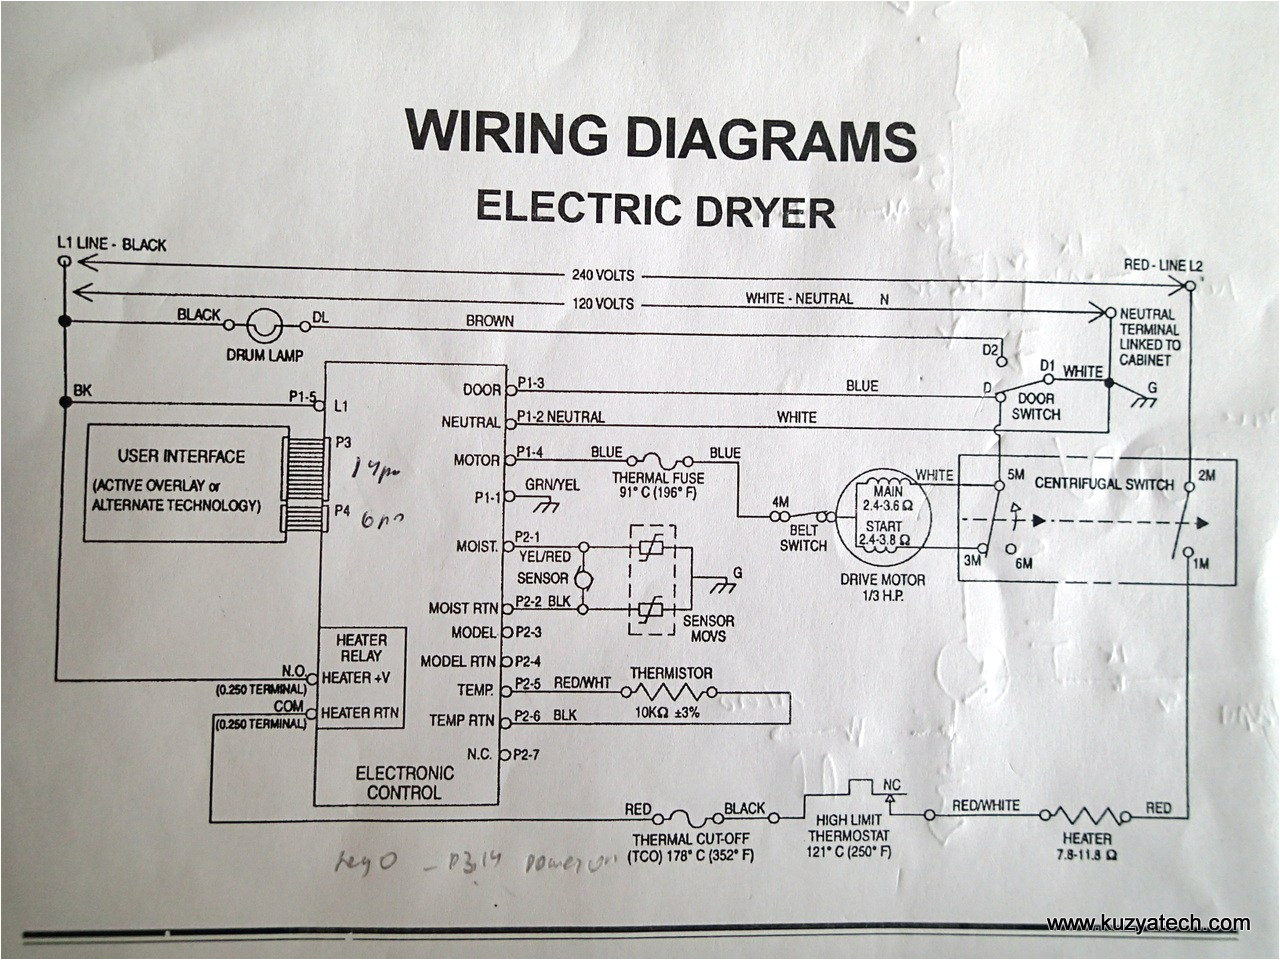 maytag duet dryer wiring diagram wiring diagram toolboxwhirlpool dryer wiring diagram wiring diagram toolbox whirlpool duet